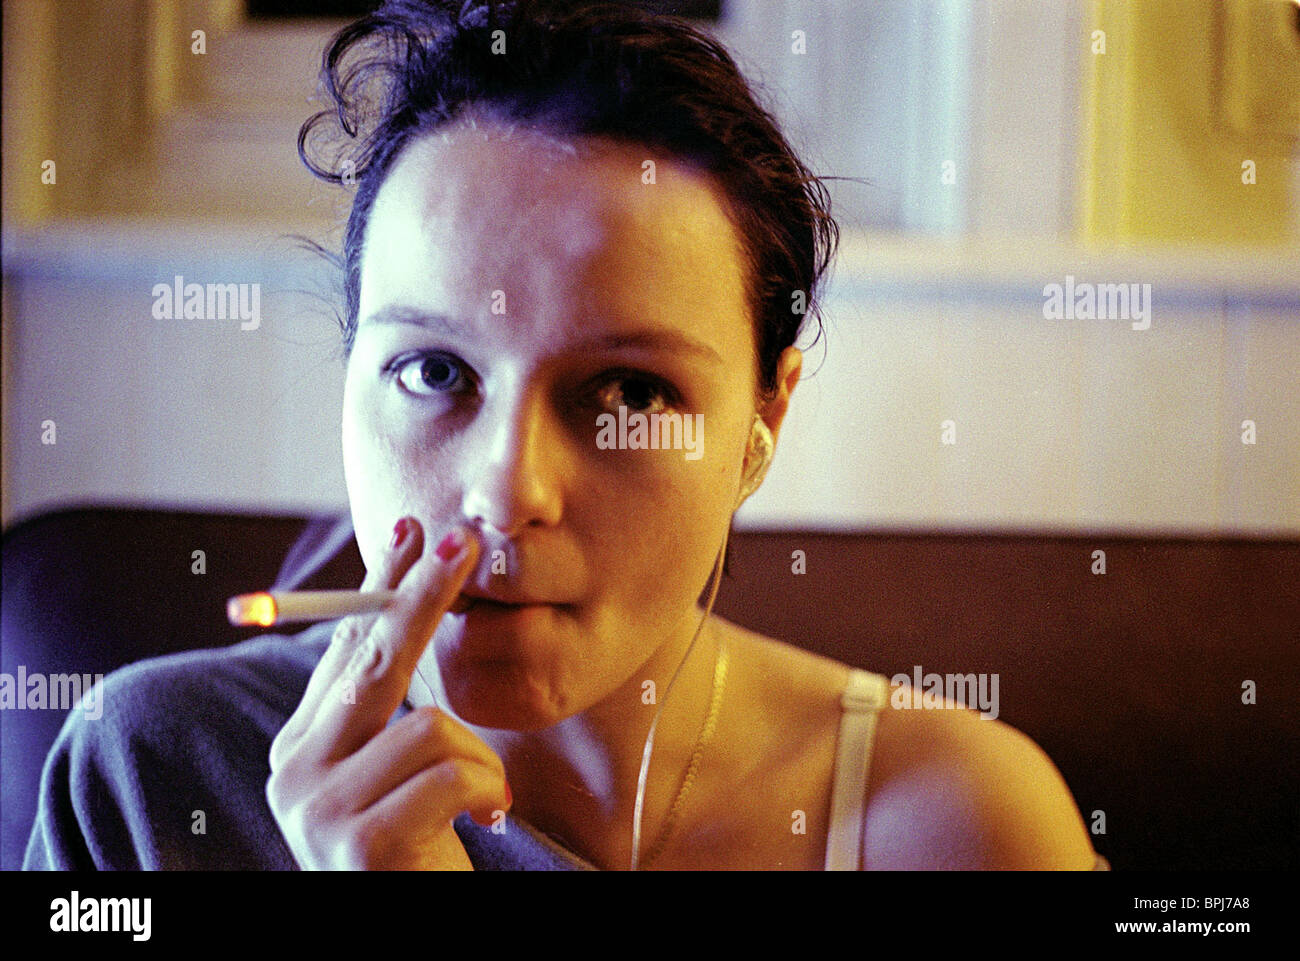 Samantha Morton pali papierosa (lub trawkę)
